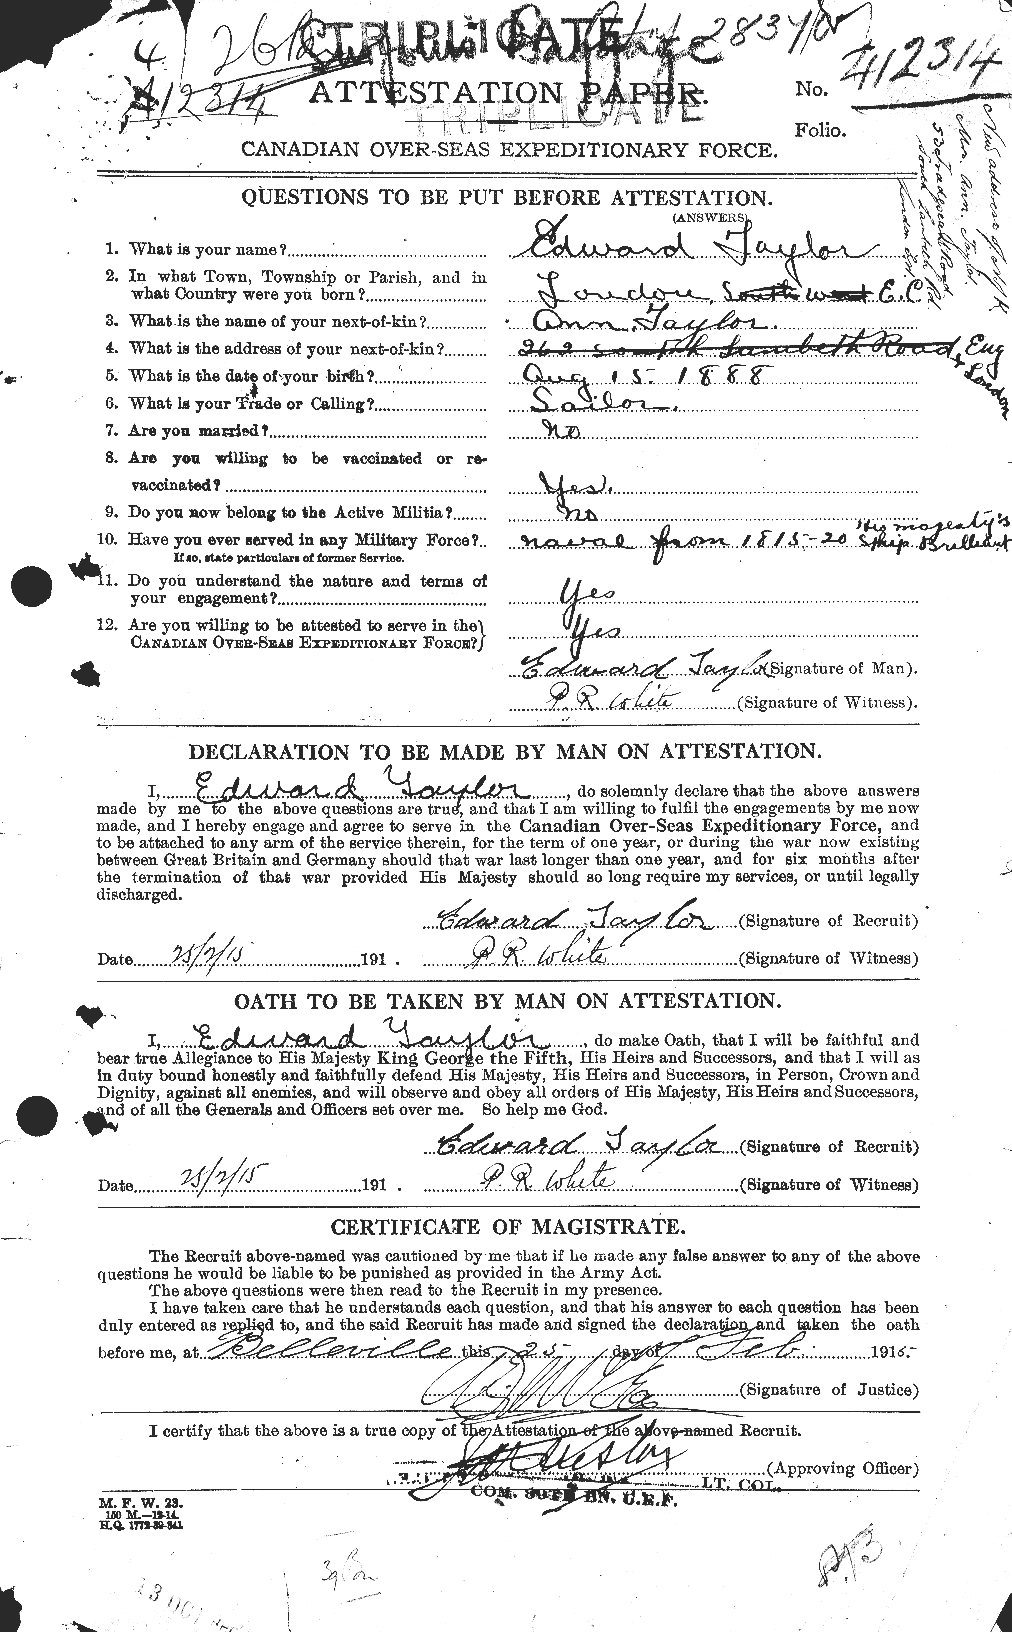 Dossiers du Personnel de la Première Guerre mondiale - CEC 627296a